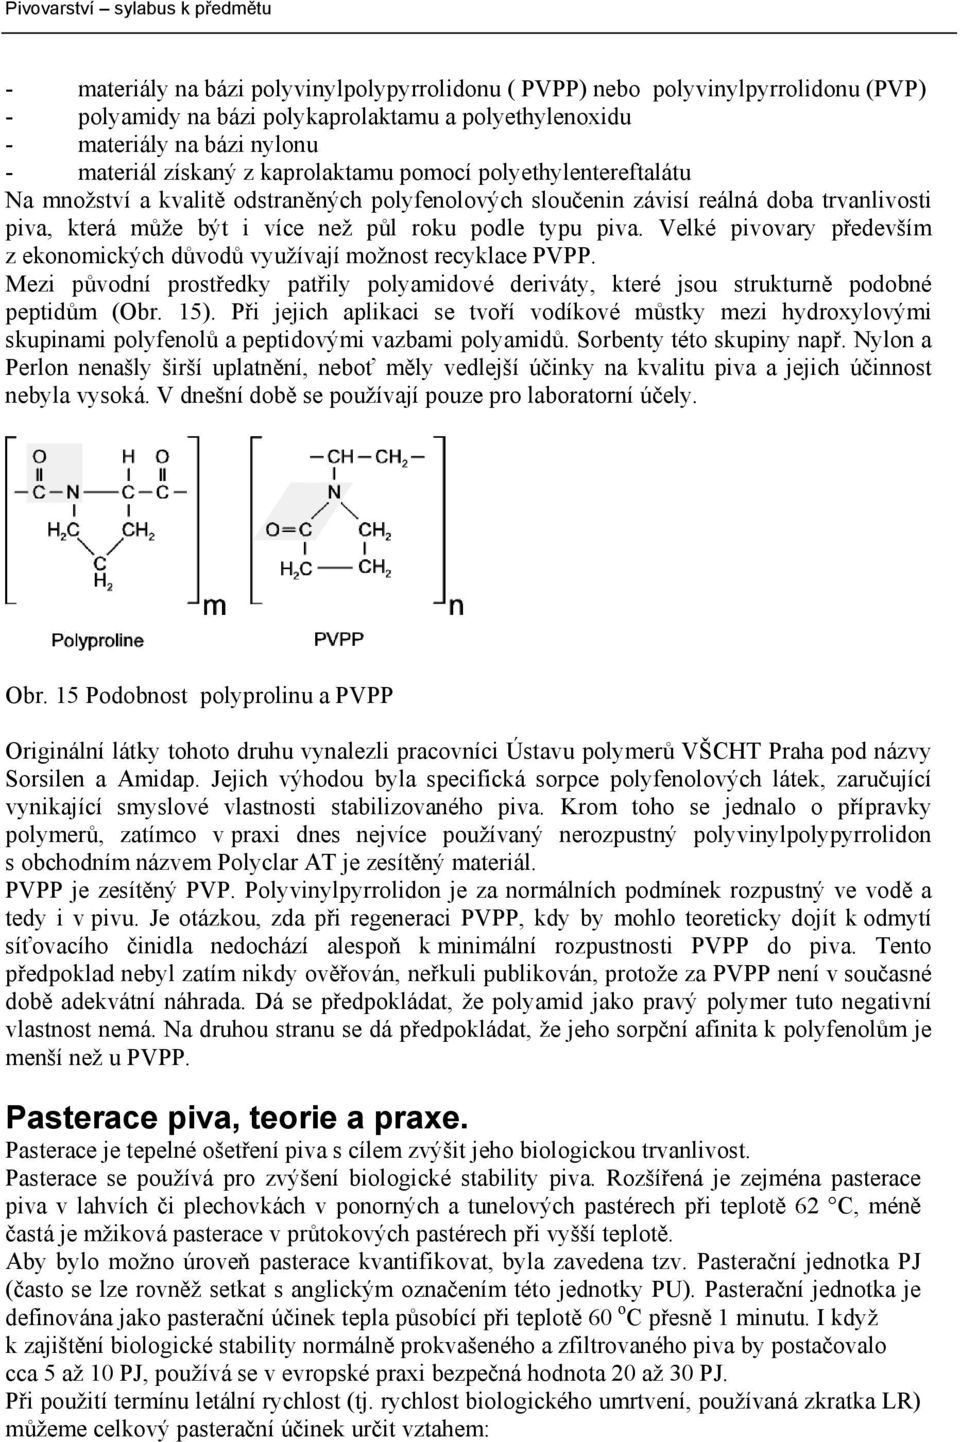 Velké pivovary především z ekonomických důvodů využívají možnost recyklace PVPP. Mezi původní prostředky patřily polyamidové deriváty, které jsou strukturně podobné peptidům (Obr. 15).